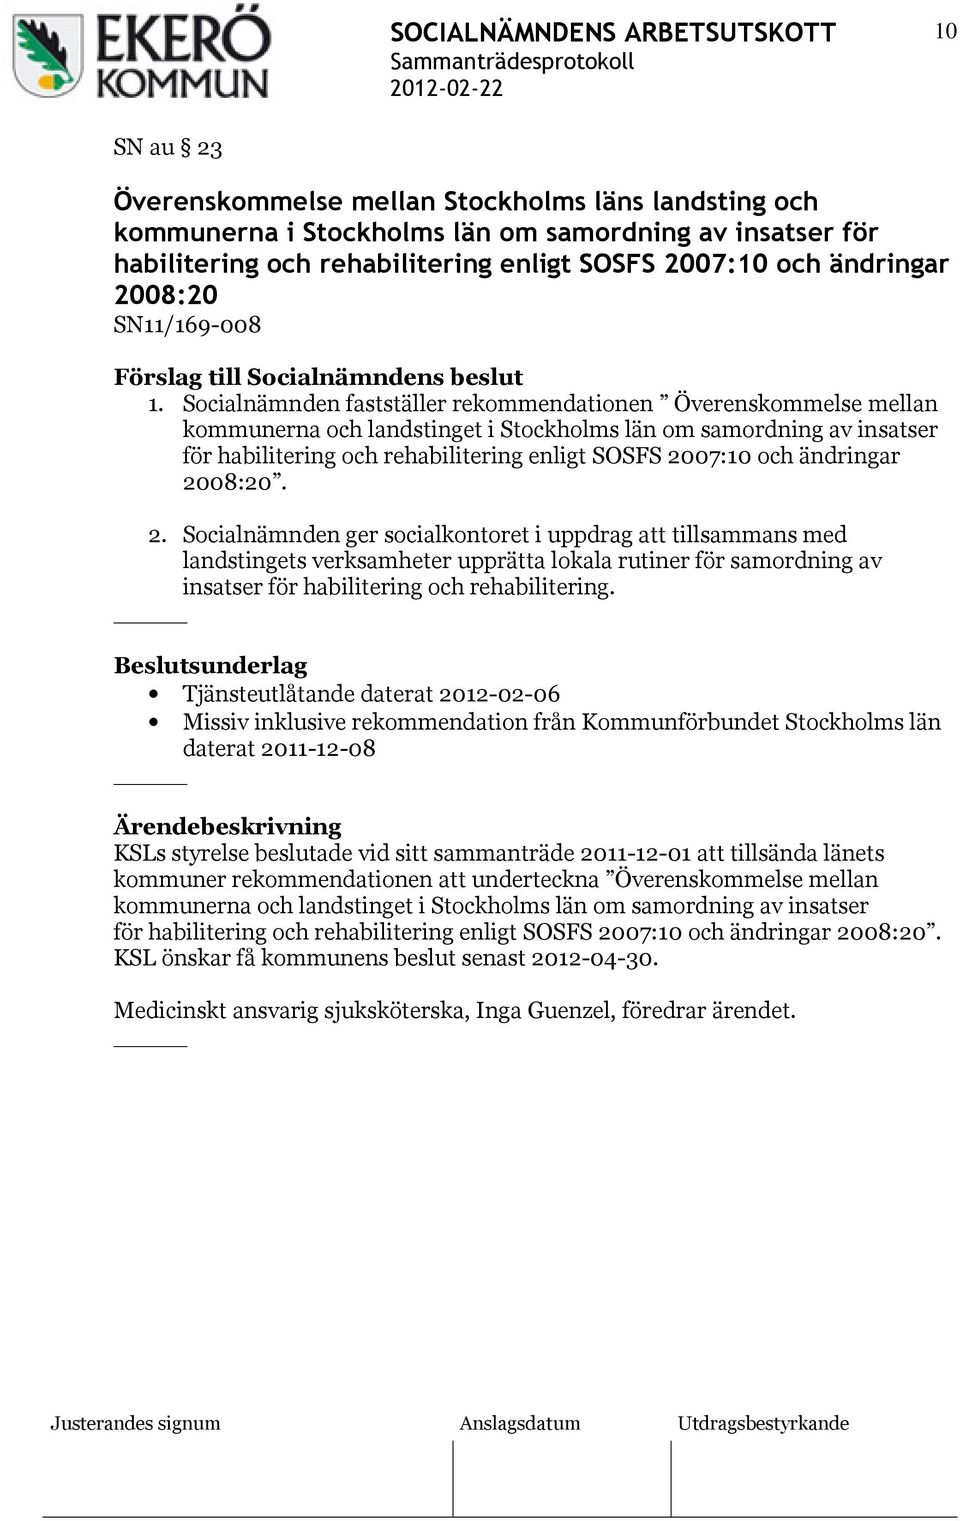 Socialnämnden fastställer rekommendationen Överenskommelse mellan kommunerna och landstinget i Stockholms län om samordning av insatser för habilitering och rehabilitering enligt SOSFS 2007:10 och